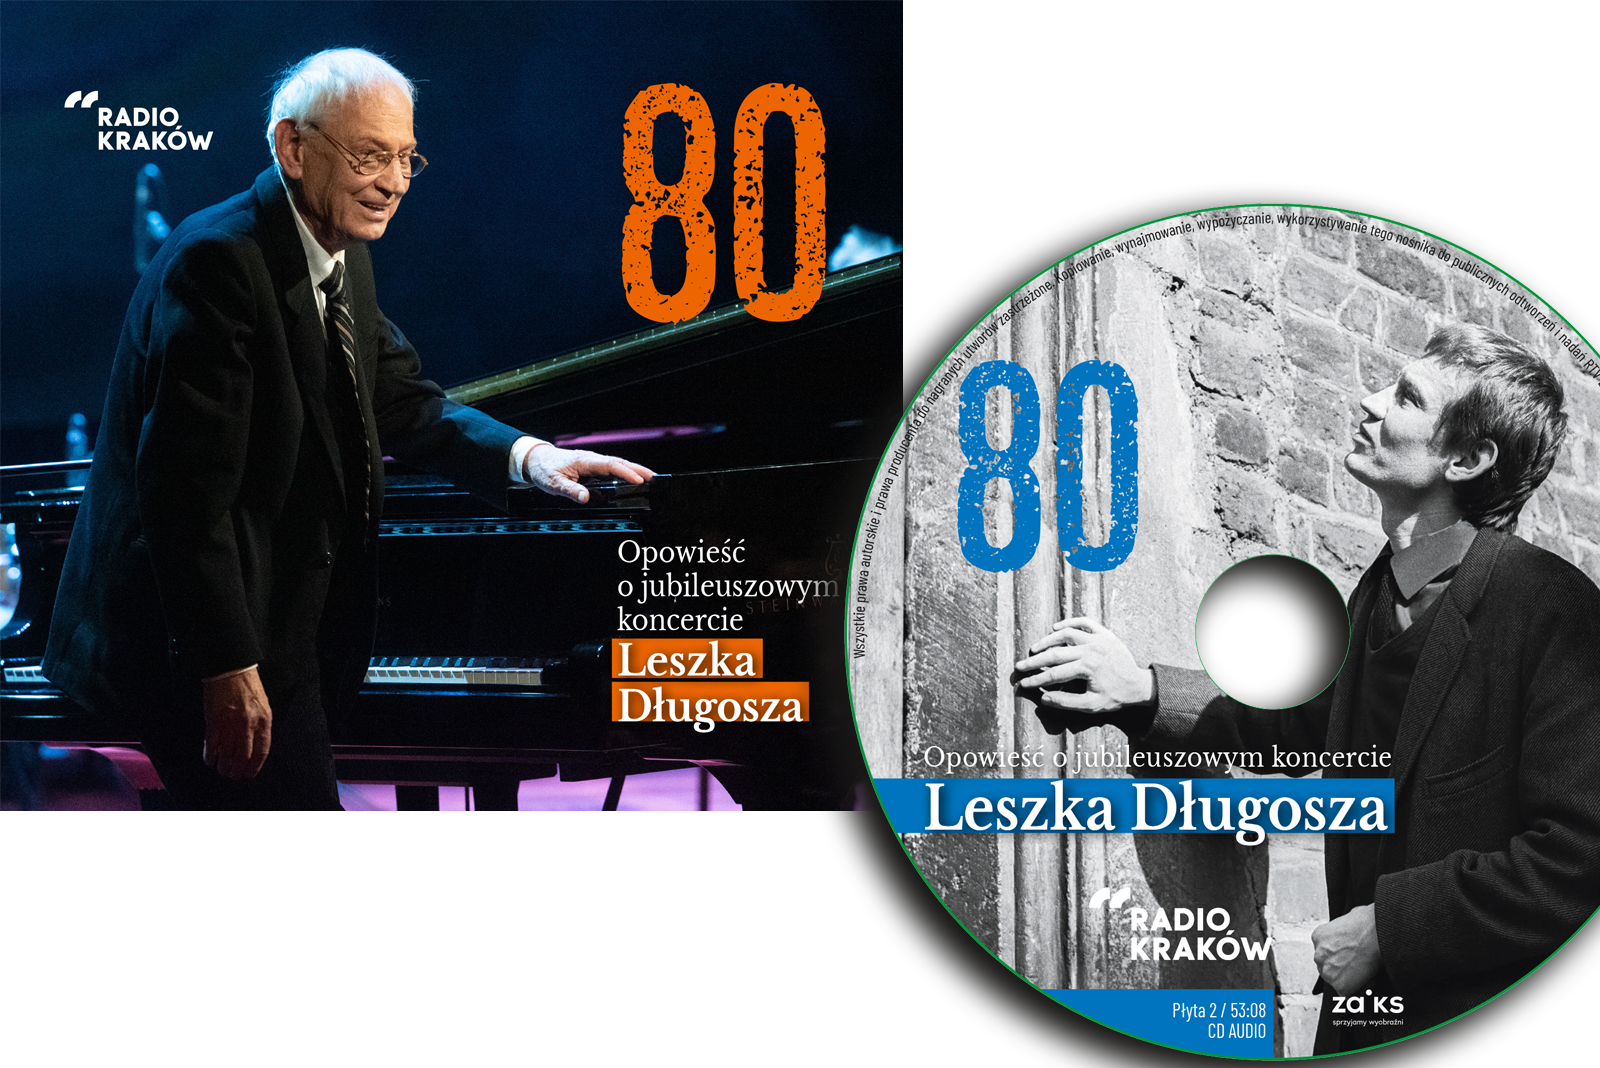 „80. Opowieść o jubileuszowym koncercie Leszka Długosza” – pamiątkowa płyta CD